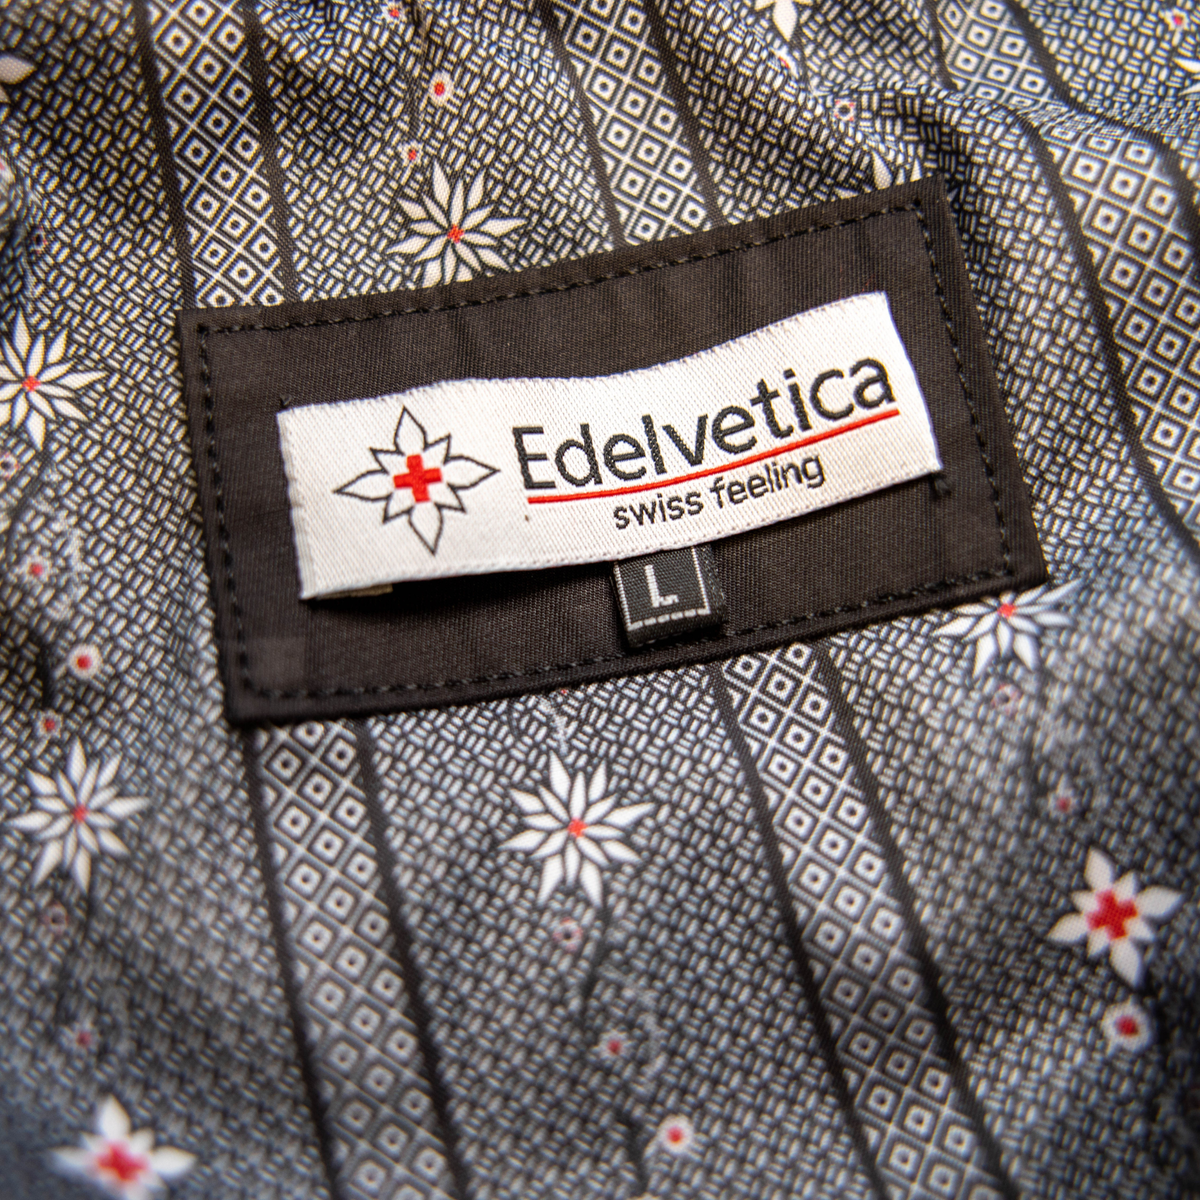 Damen Edelweiss Übergangsjacke von Edelvetica, eine elegante und funktionale Jacke. Sie zeichnet sich durch das charakteristische Edelweiss-Design aus, das stilvolle Akzente setzt. Ideal für die Übergangszeit, vereint die Jacke Komfort mit modischem Ausdruck und eignet sich perfekt für vielseitige Outfits.